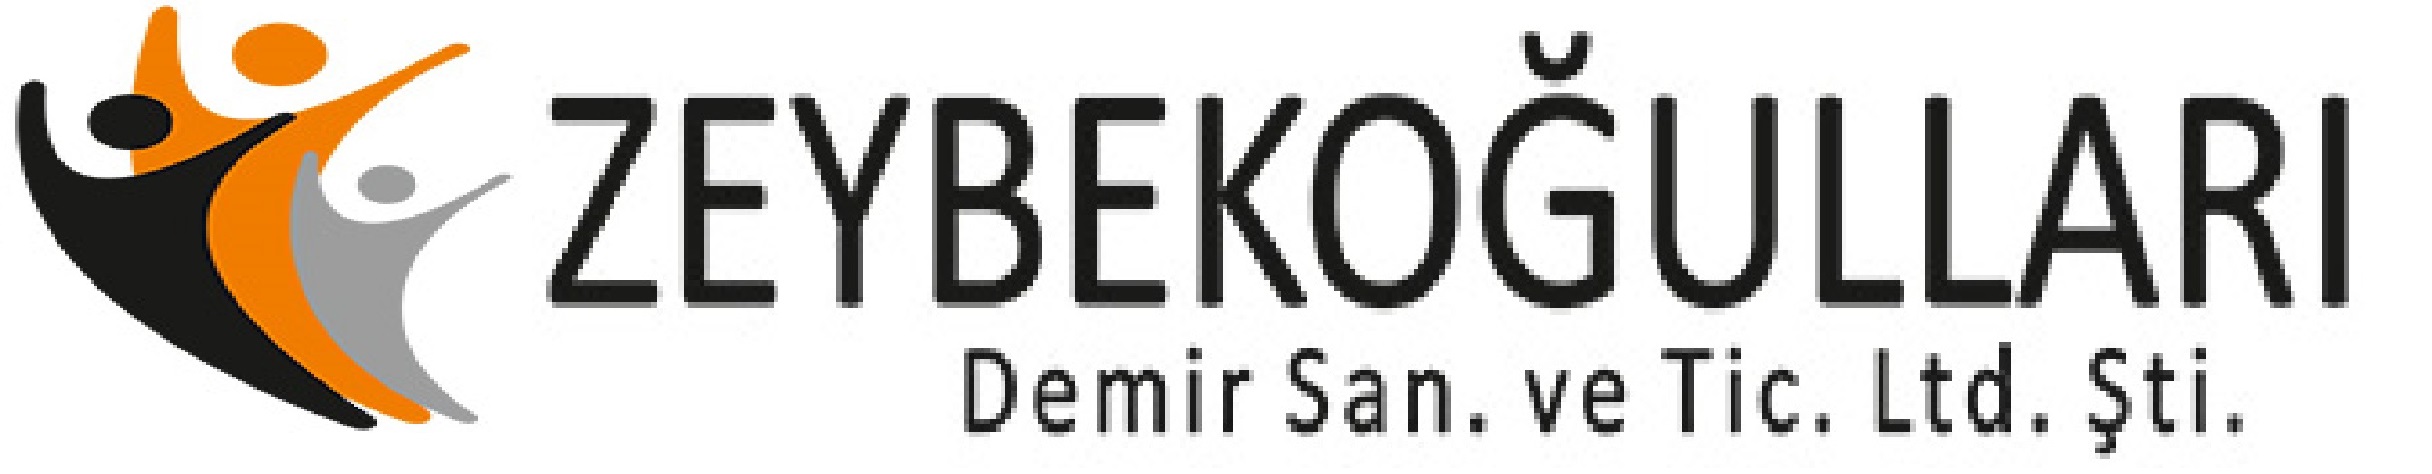 Zeybekoğulları Hafriyat Nakliyat Otomotiv Demir Sanayi Ticaret Ve Limited Şirketi Logo